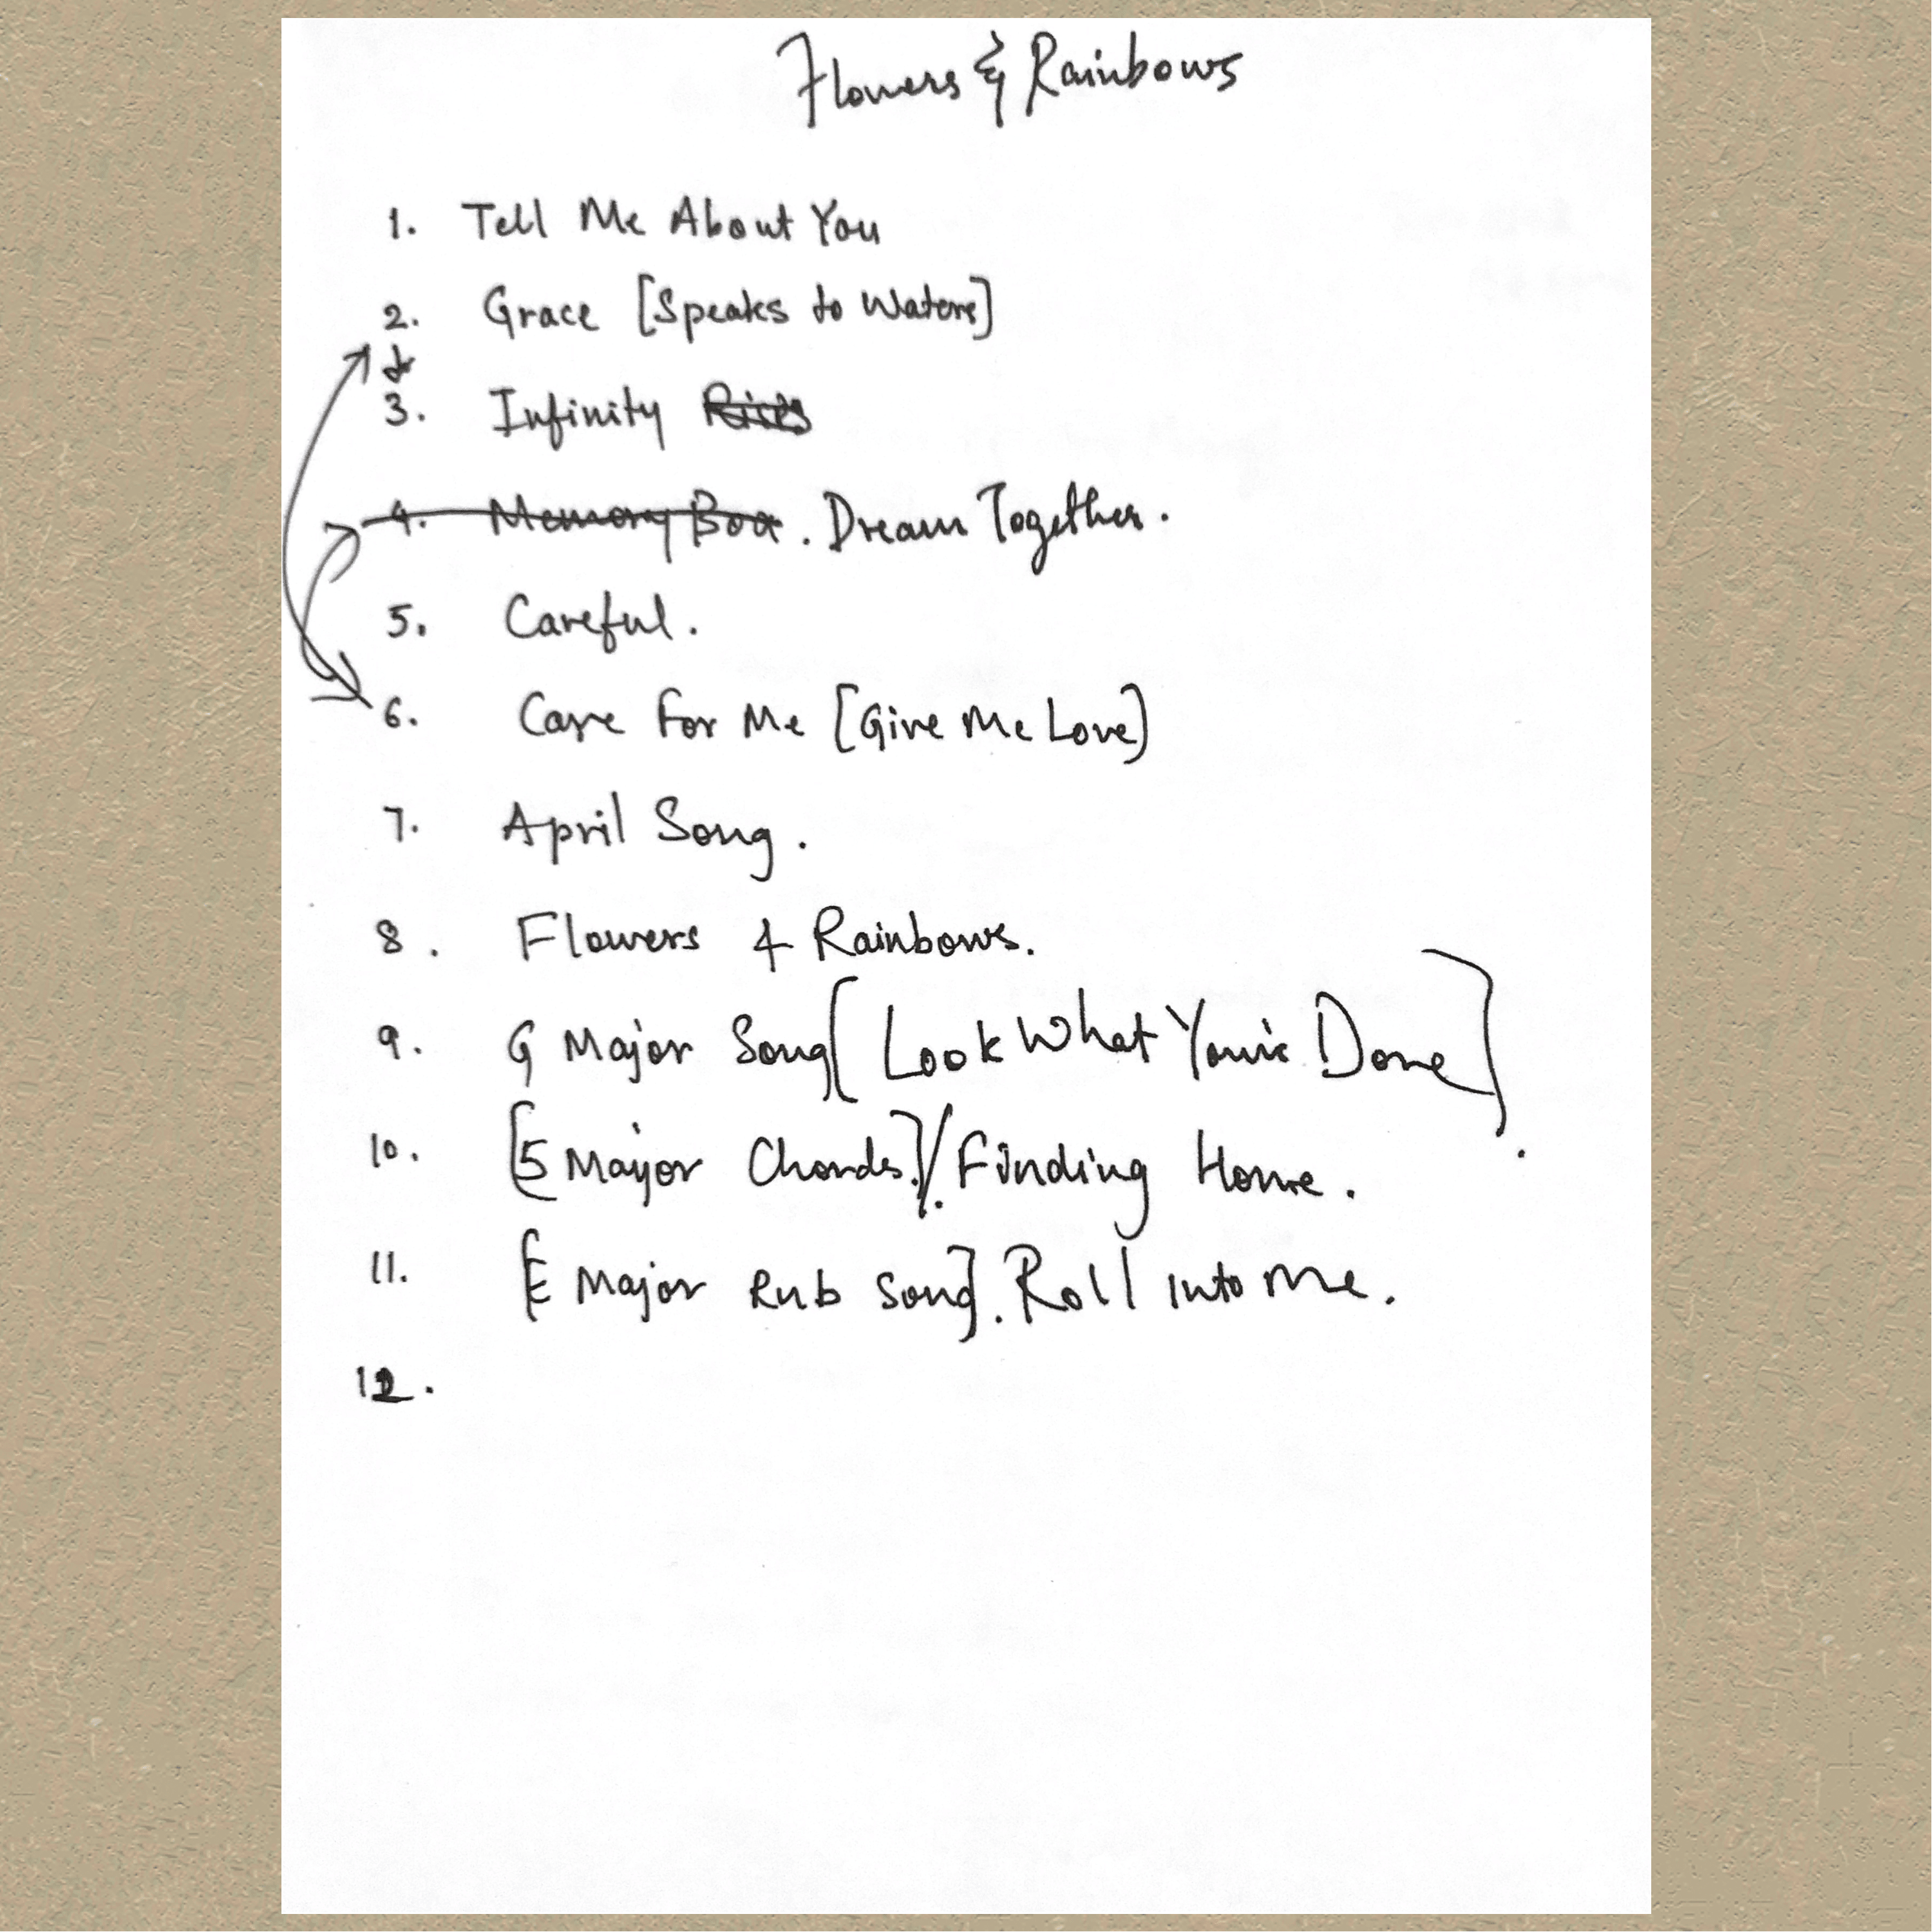 Flowers & Rainbows Original Album Tracklist